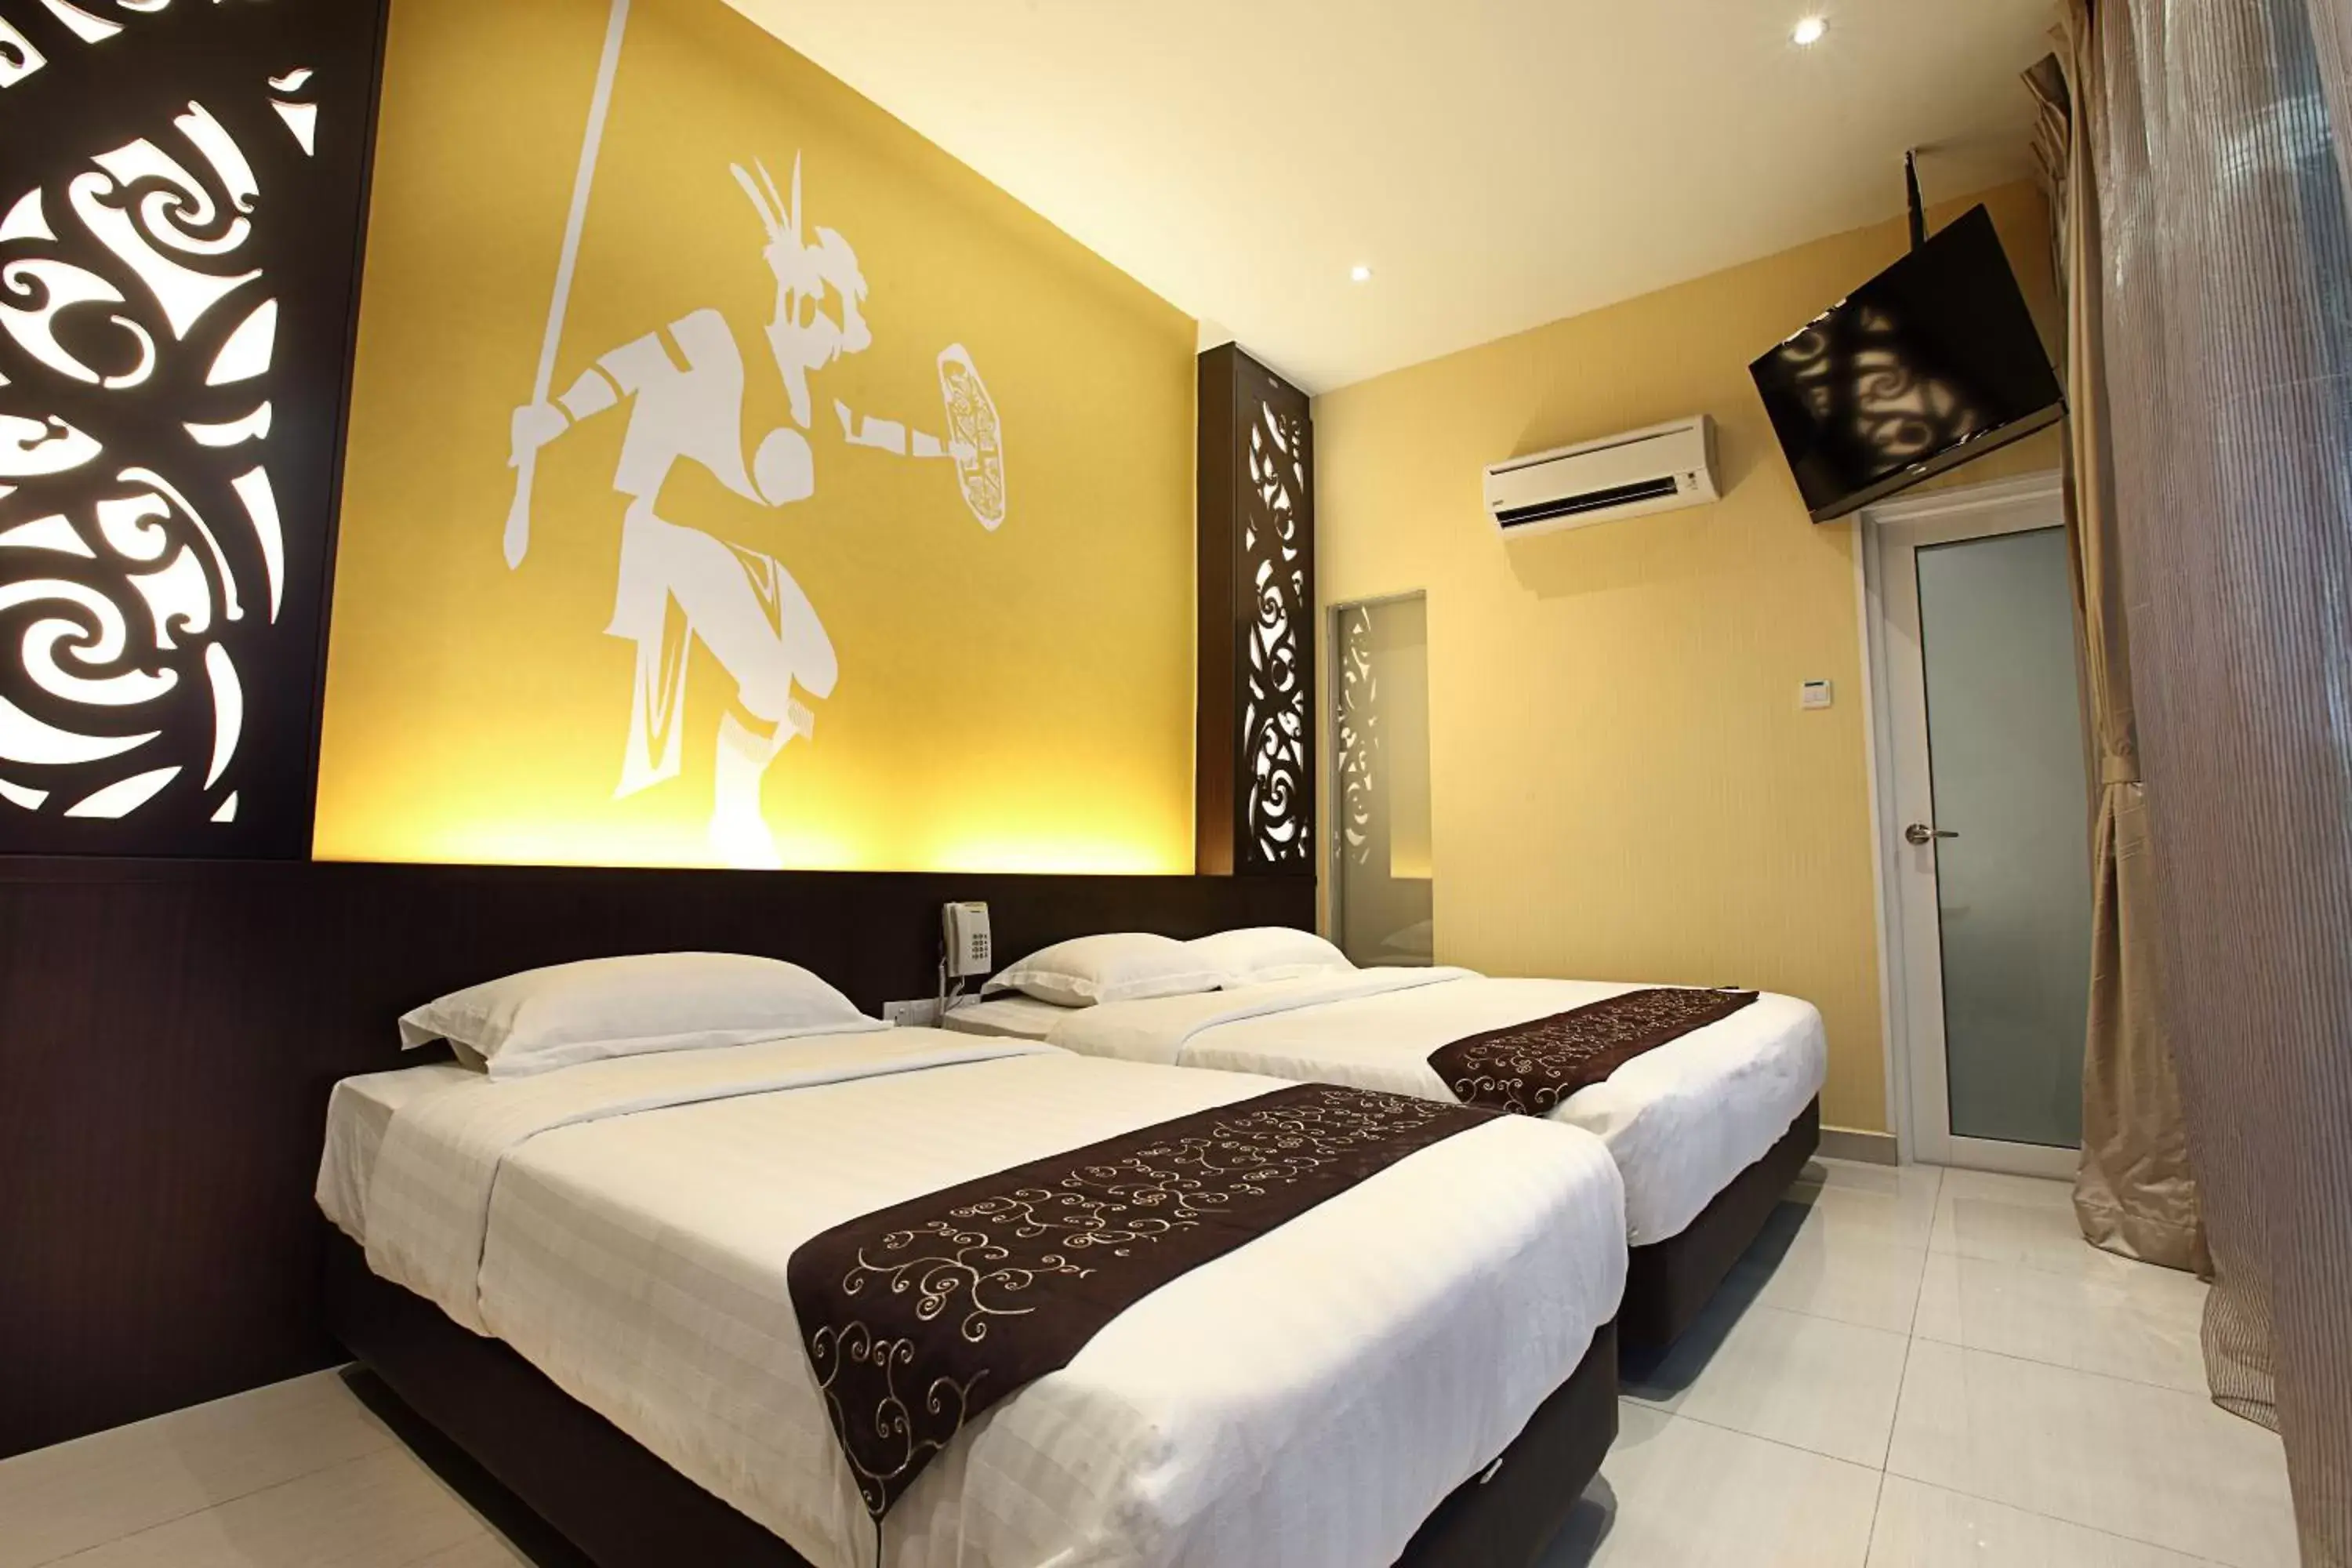 Bed in Sri Enstek Hotel KLIA, KLIA 2 & F1